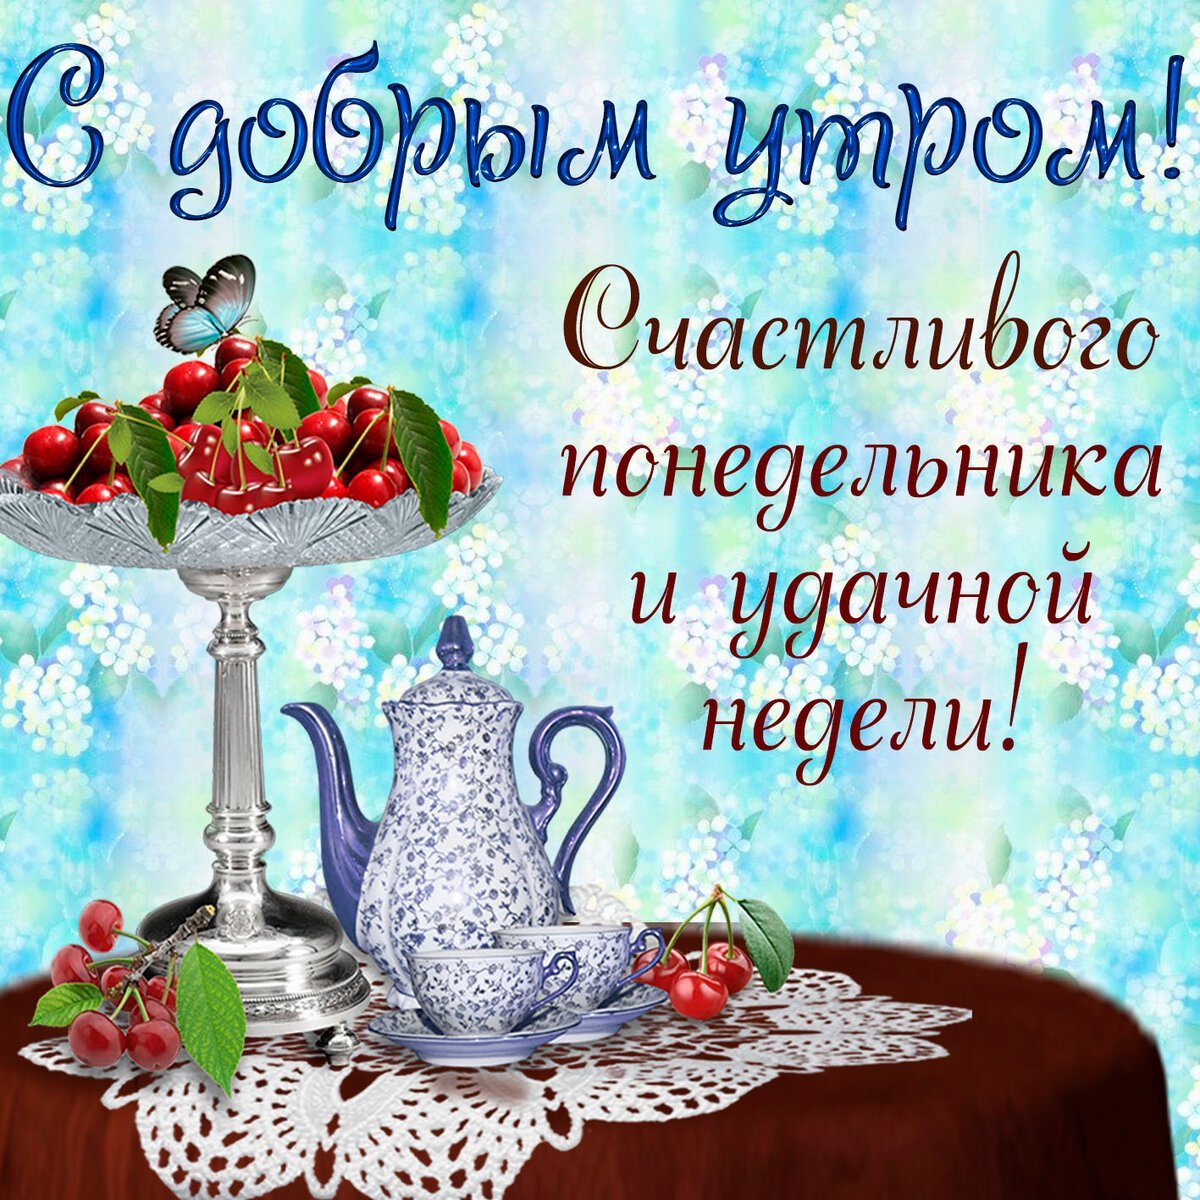 Открытка с надписью С добрым утром! Желаю счастливого понедельника и удачной недели, изображающая вазу с вишнями, чайник на скатерти и бабочку.